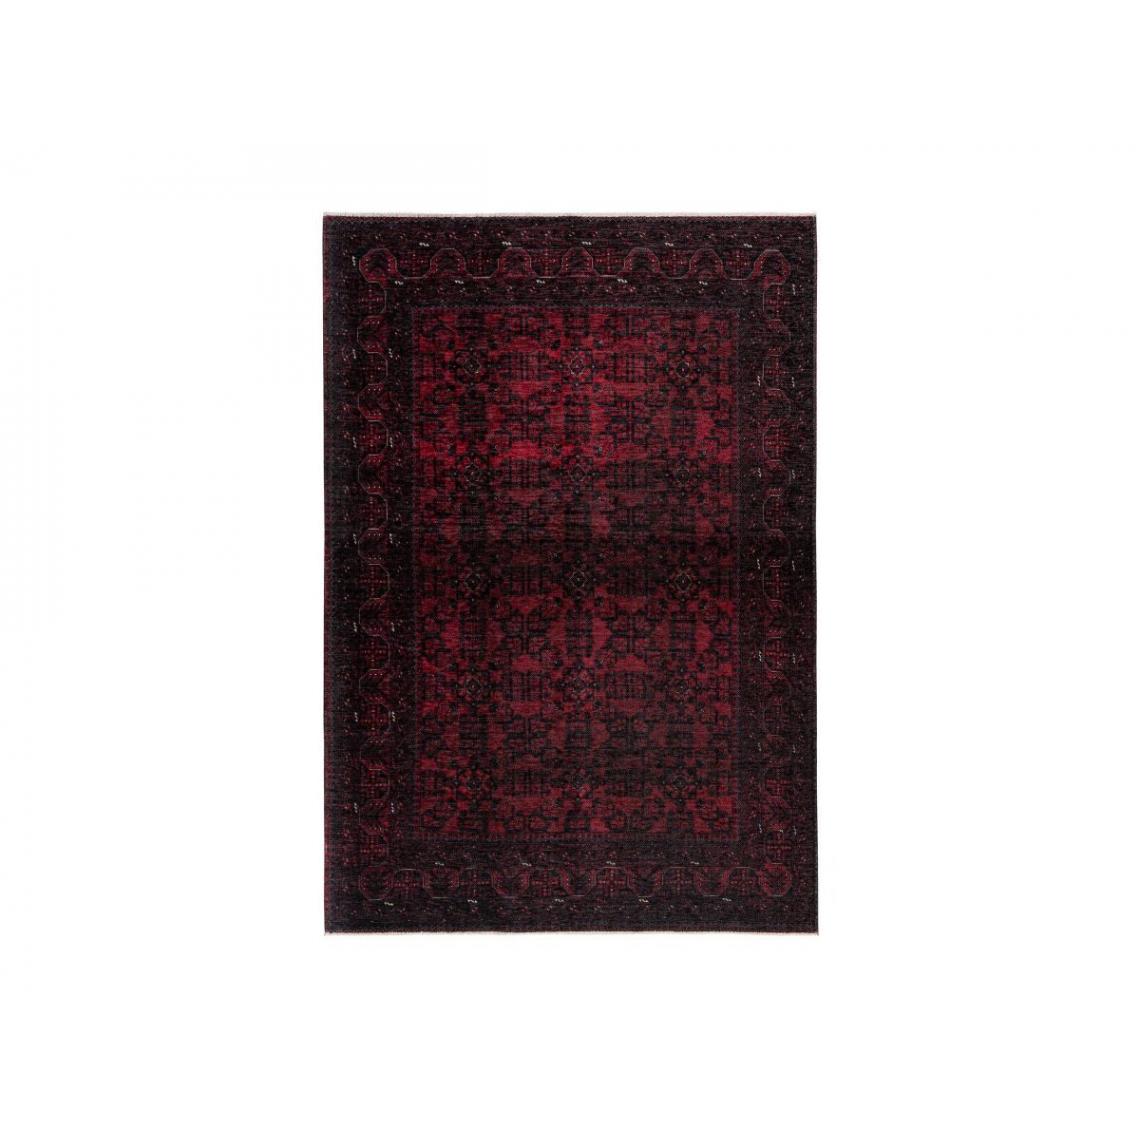 Bobochic - BOBOCHIC Tapis poil court rectangulaire RUBIS motif graphique Rouge 120x170 - Tapis